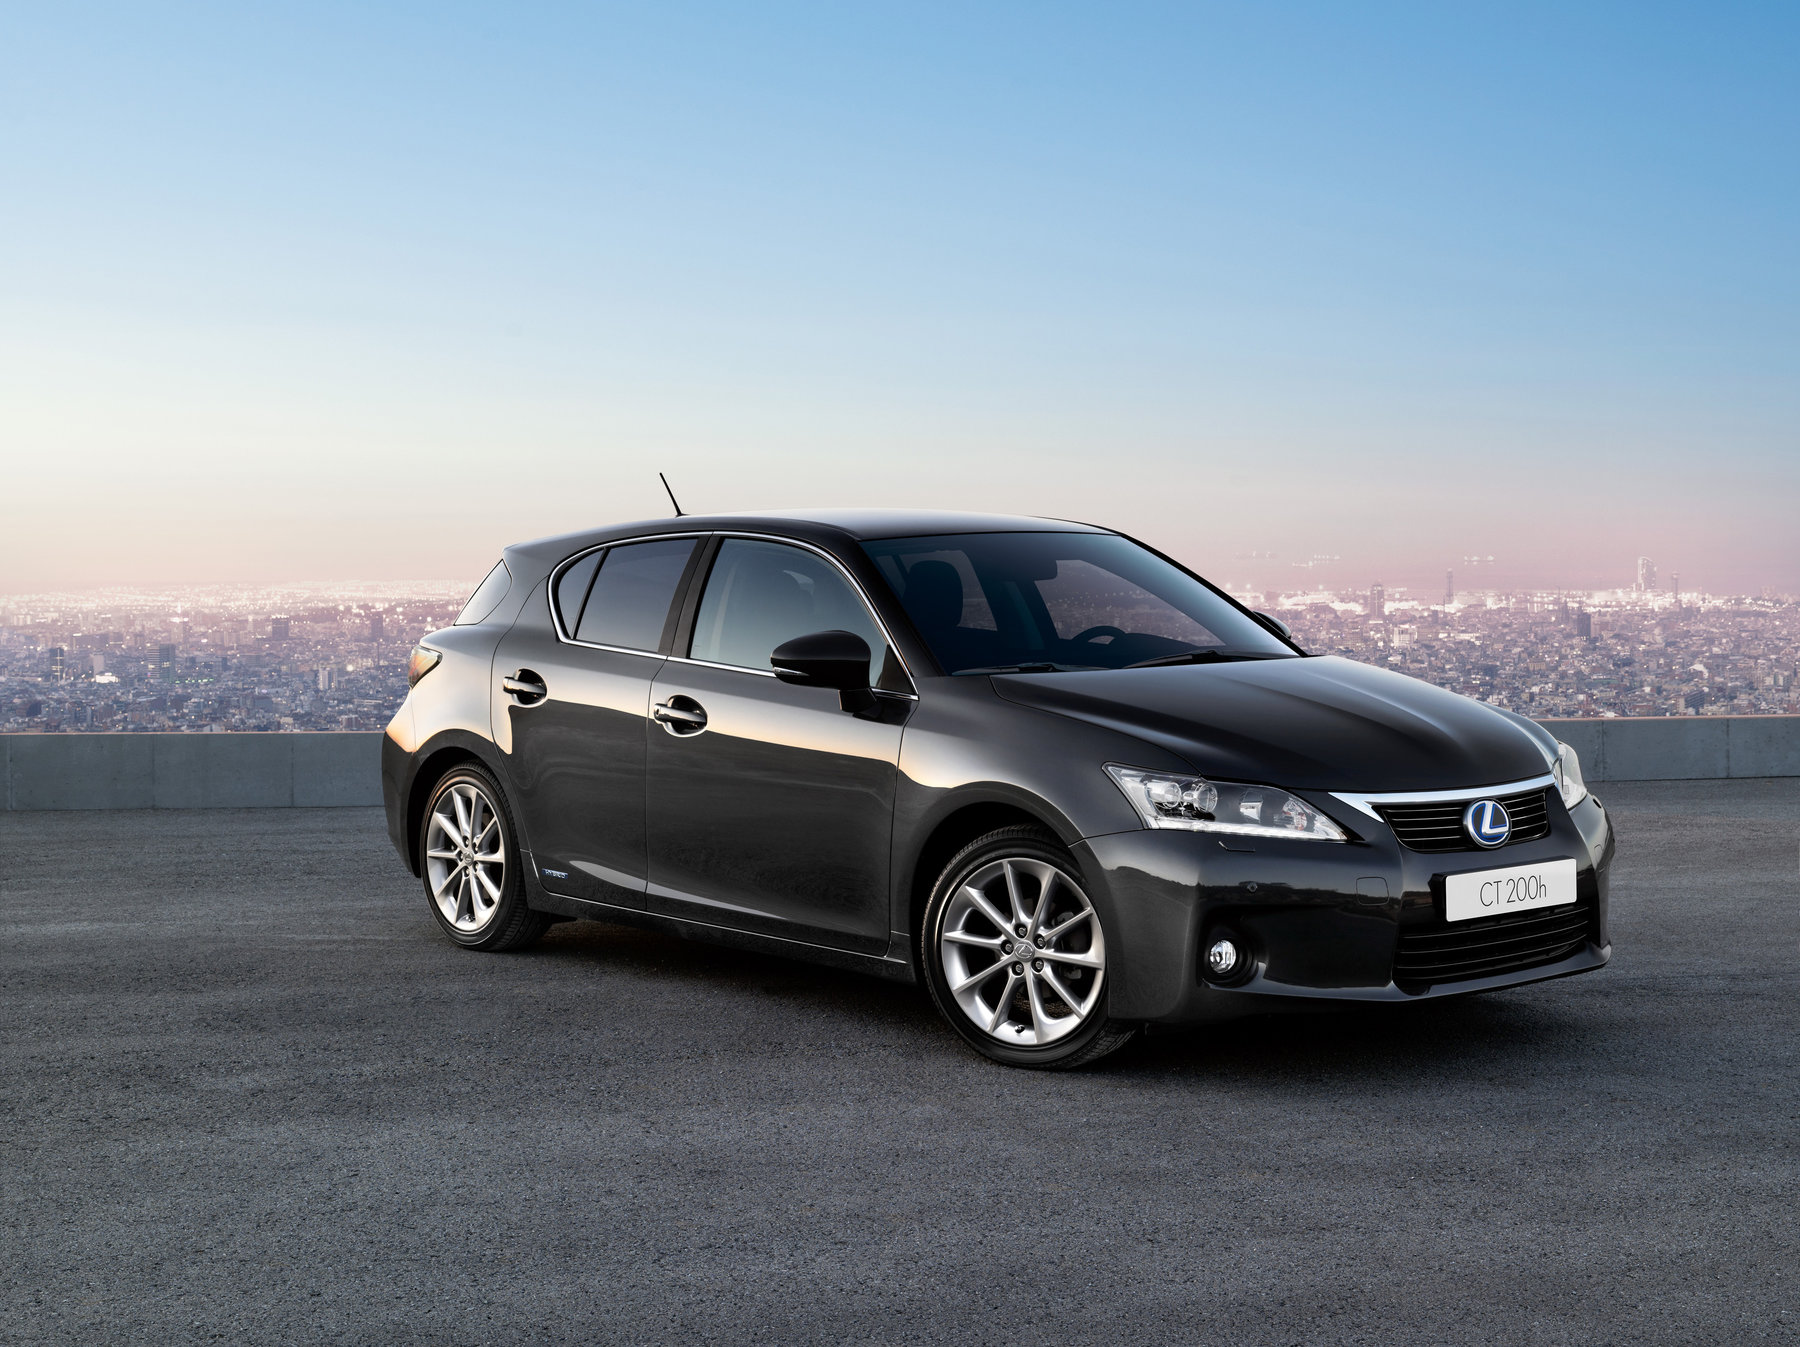 Galería Lexus es la primera marca premium según el Consumer Reports`2011 Annual Car Reliability Survey